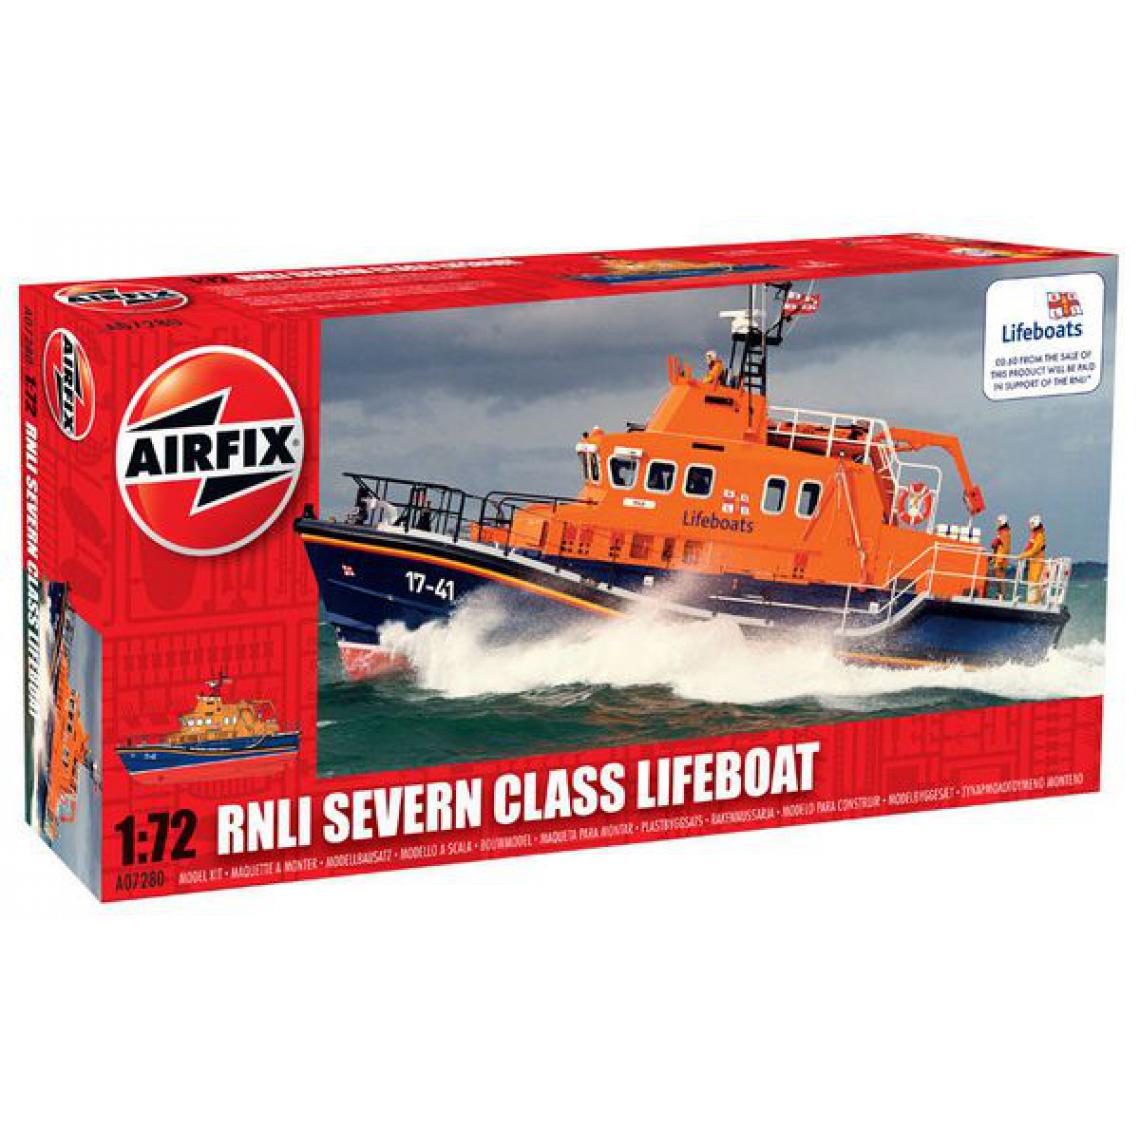 Airfix - RNLI Severn Class Lifeboat - 1:72e - Airfix - Bateaux RC